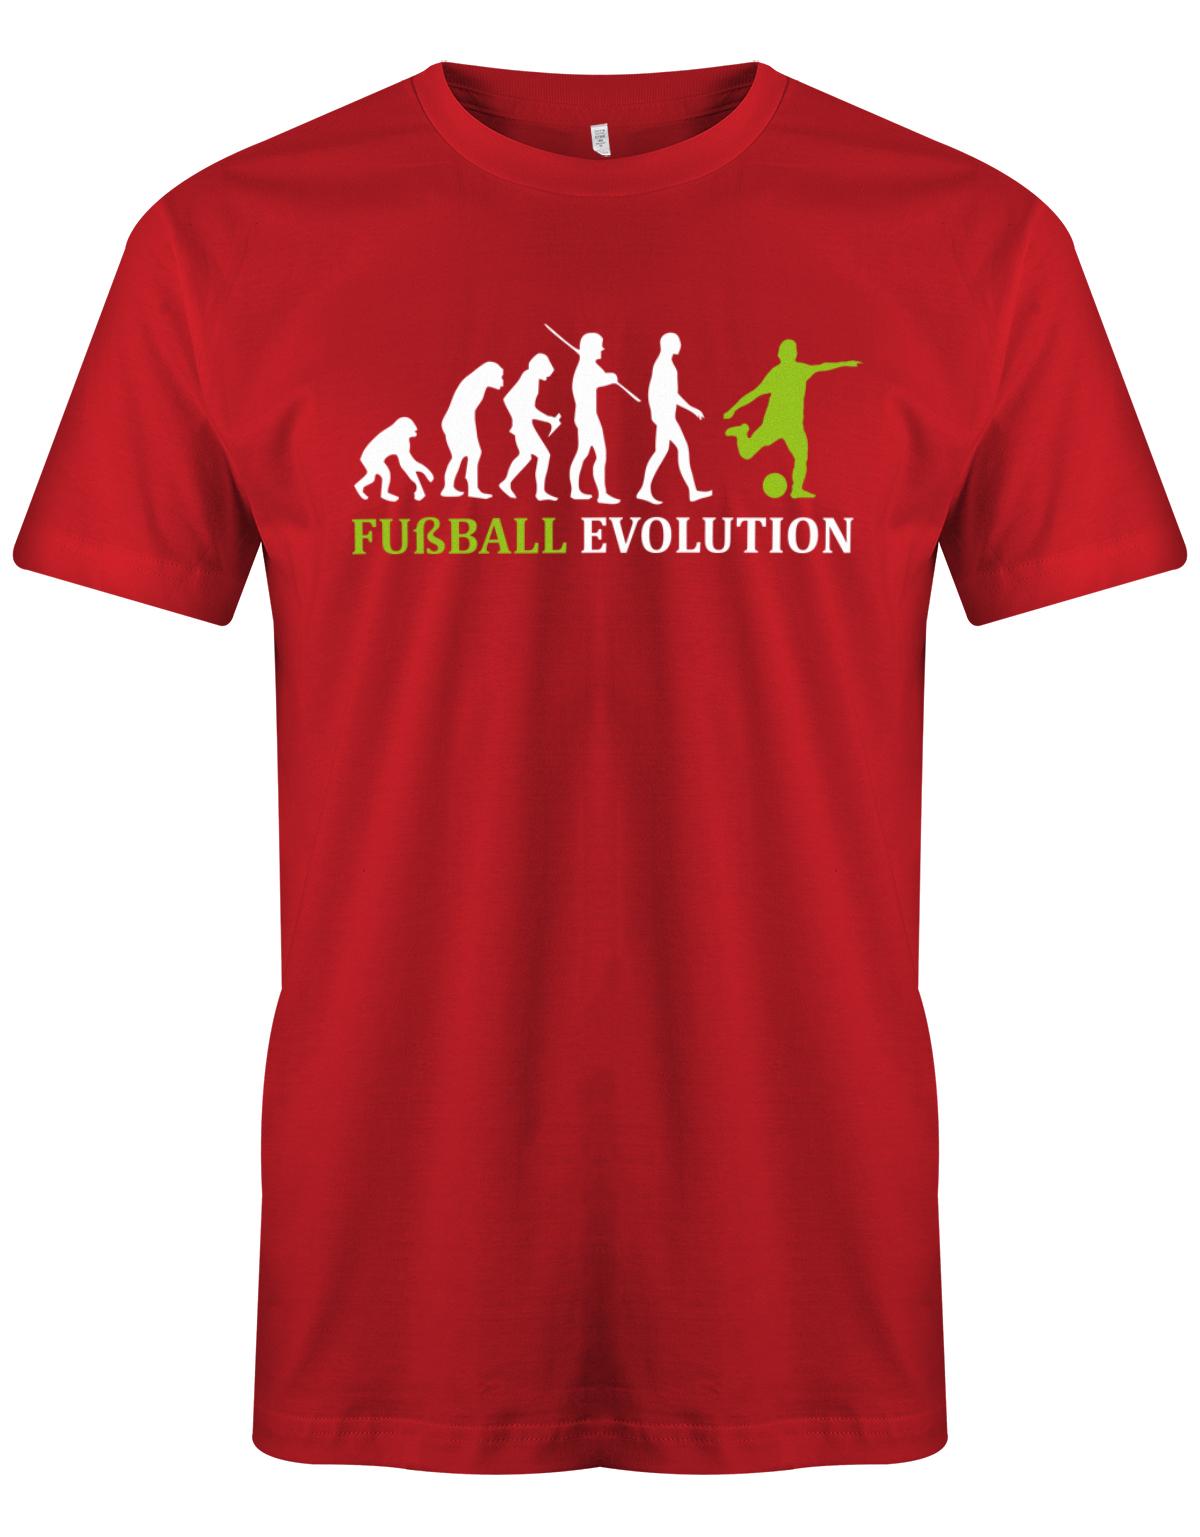 Fussball-Evolution-Herren-Shirt-Rot-Gr-n